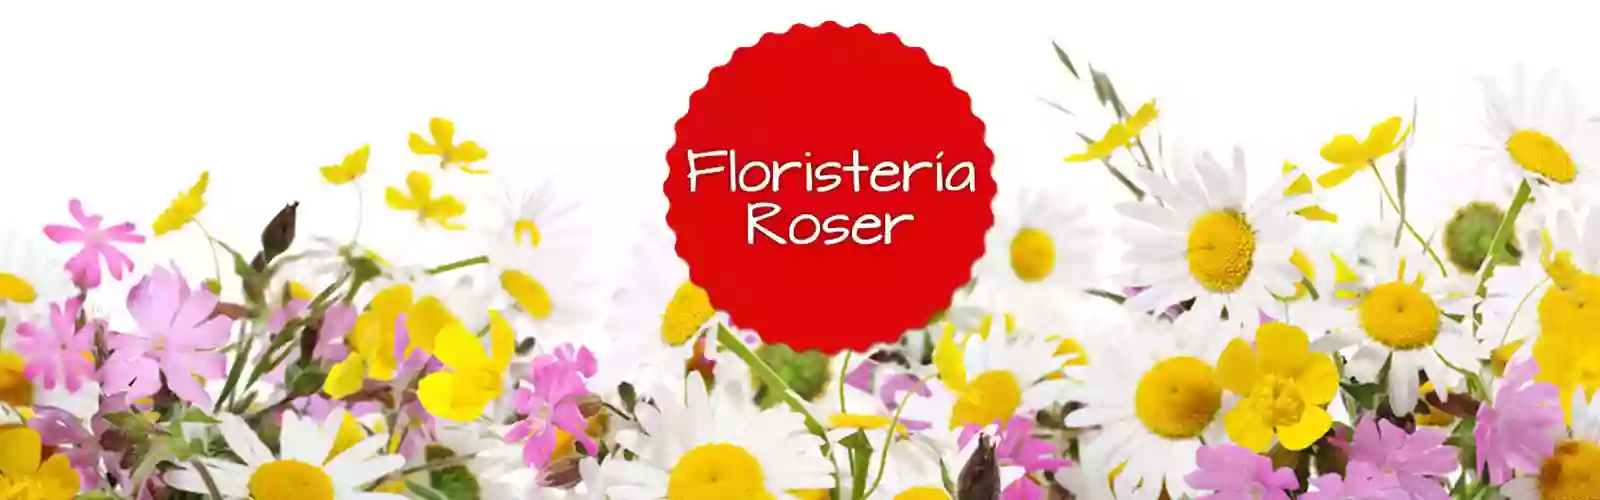 Floristeria Roser